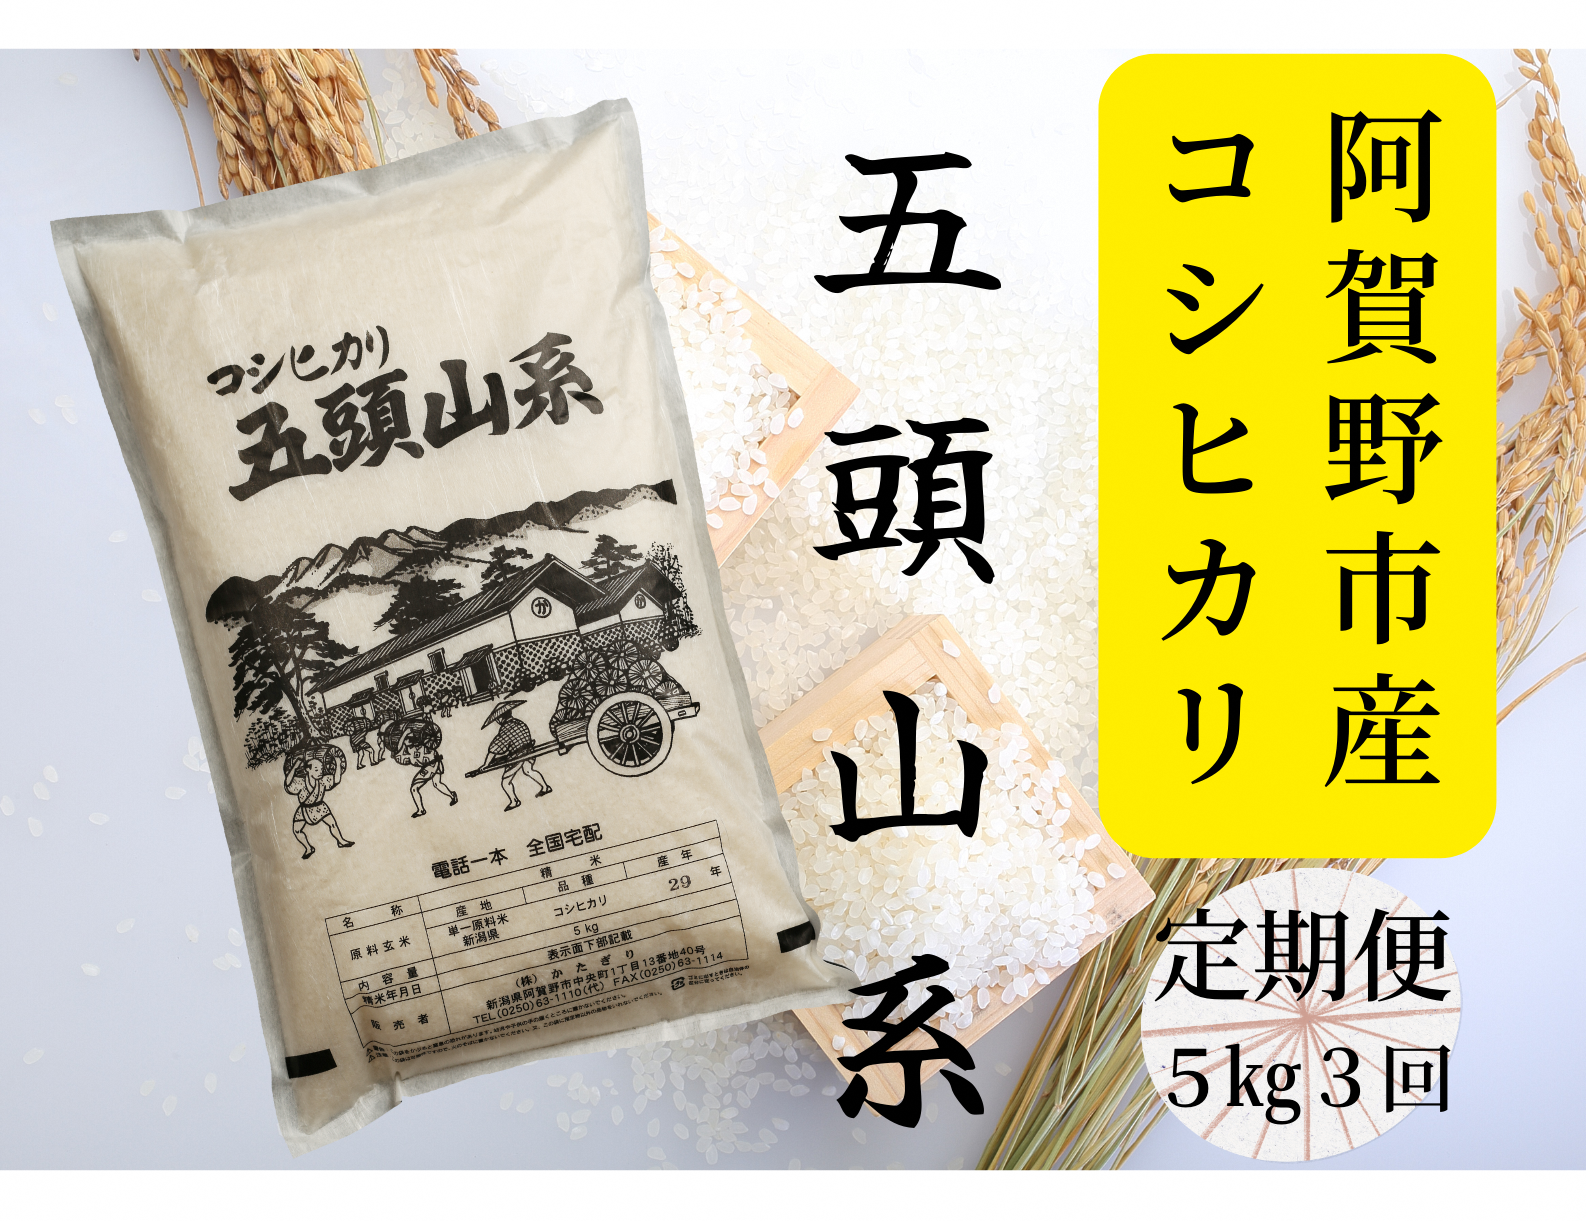 【3回定期便】「米屋のこだわり阿賀野市産」コシヒカリ5kg×3回 1E06027